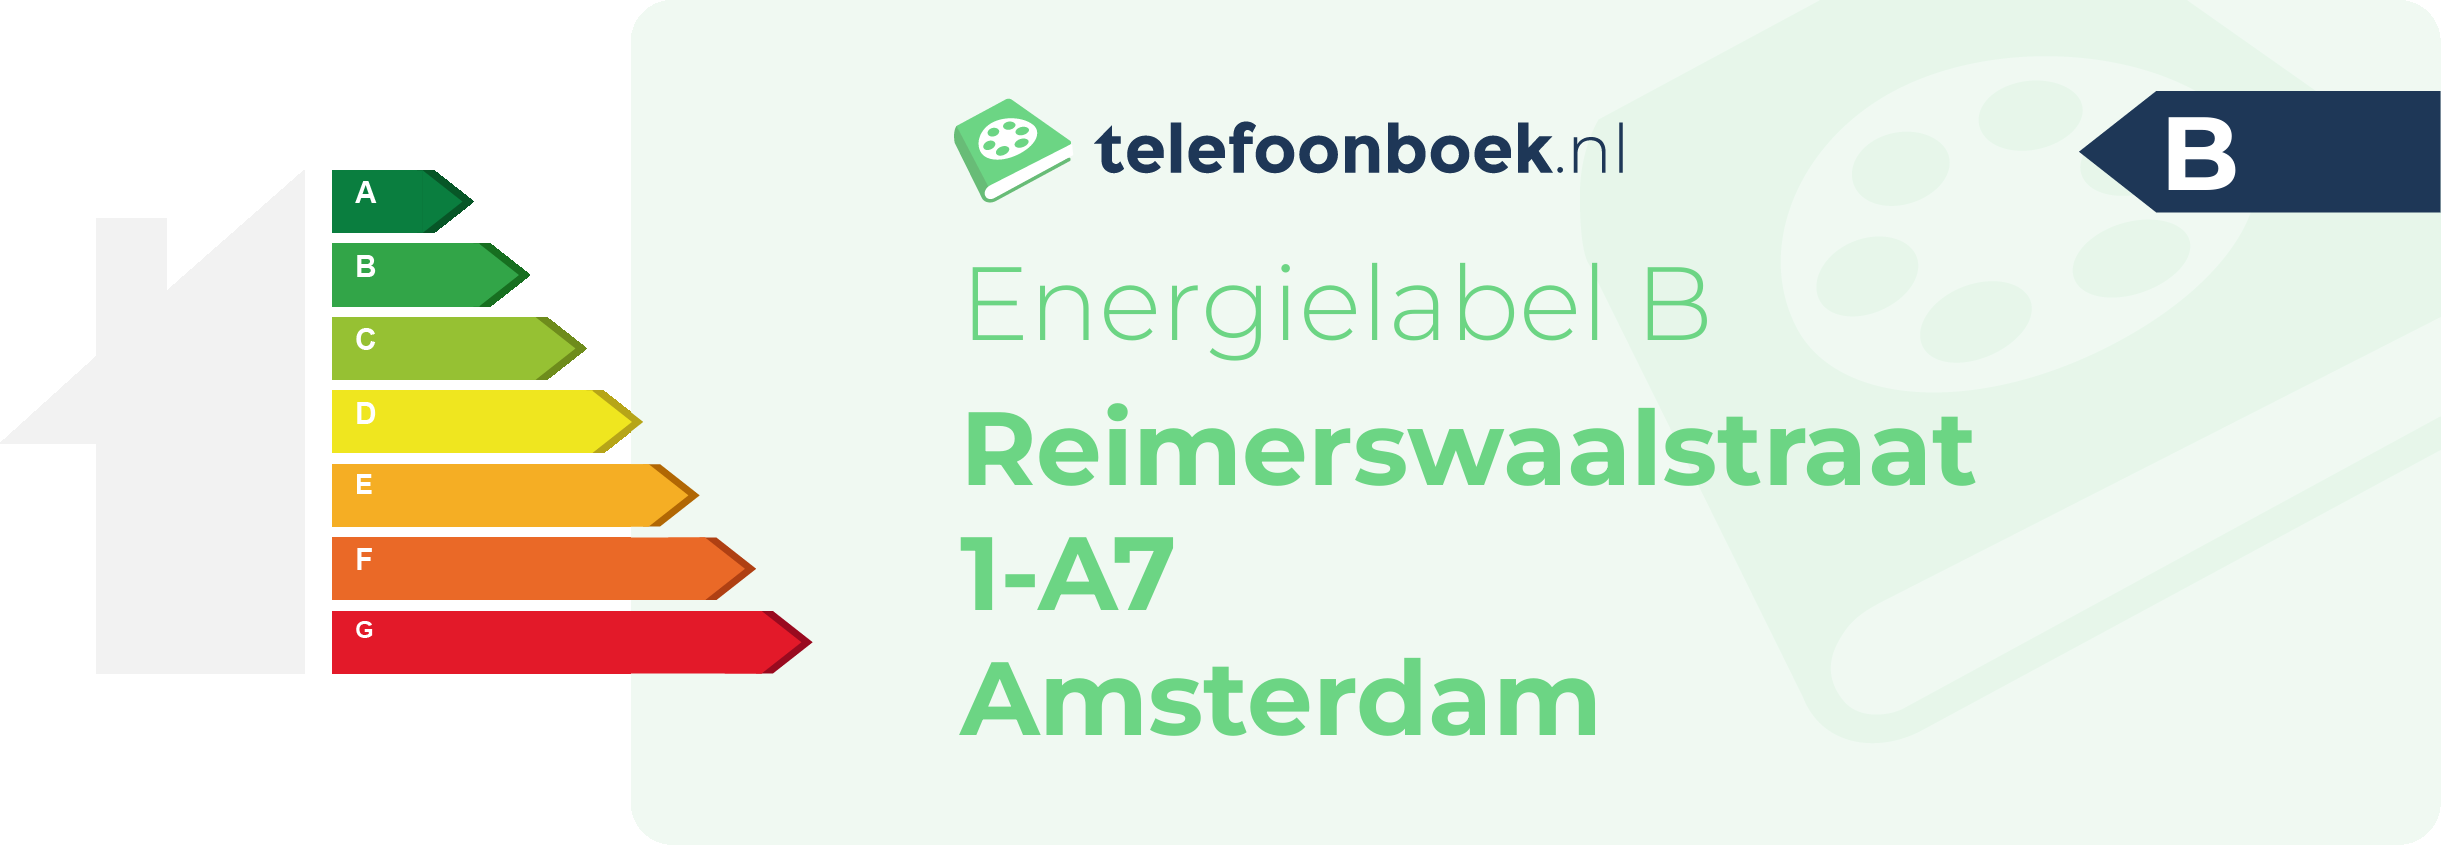 Energielabel Reimerswaalstraat 1-A7 Amsterdam